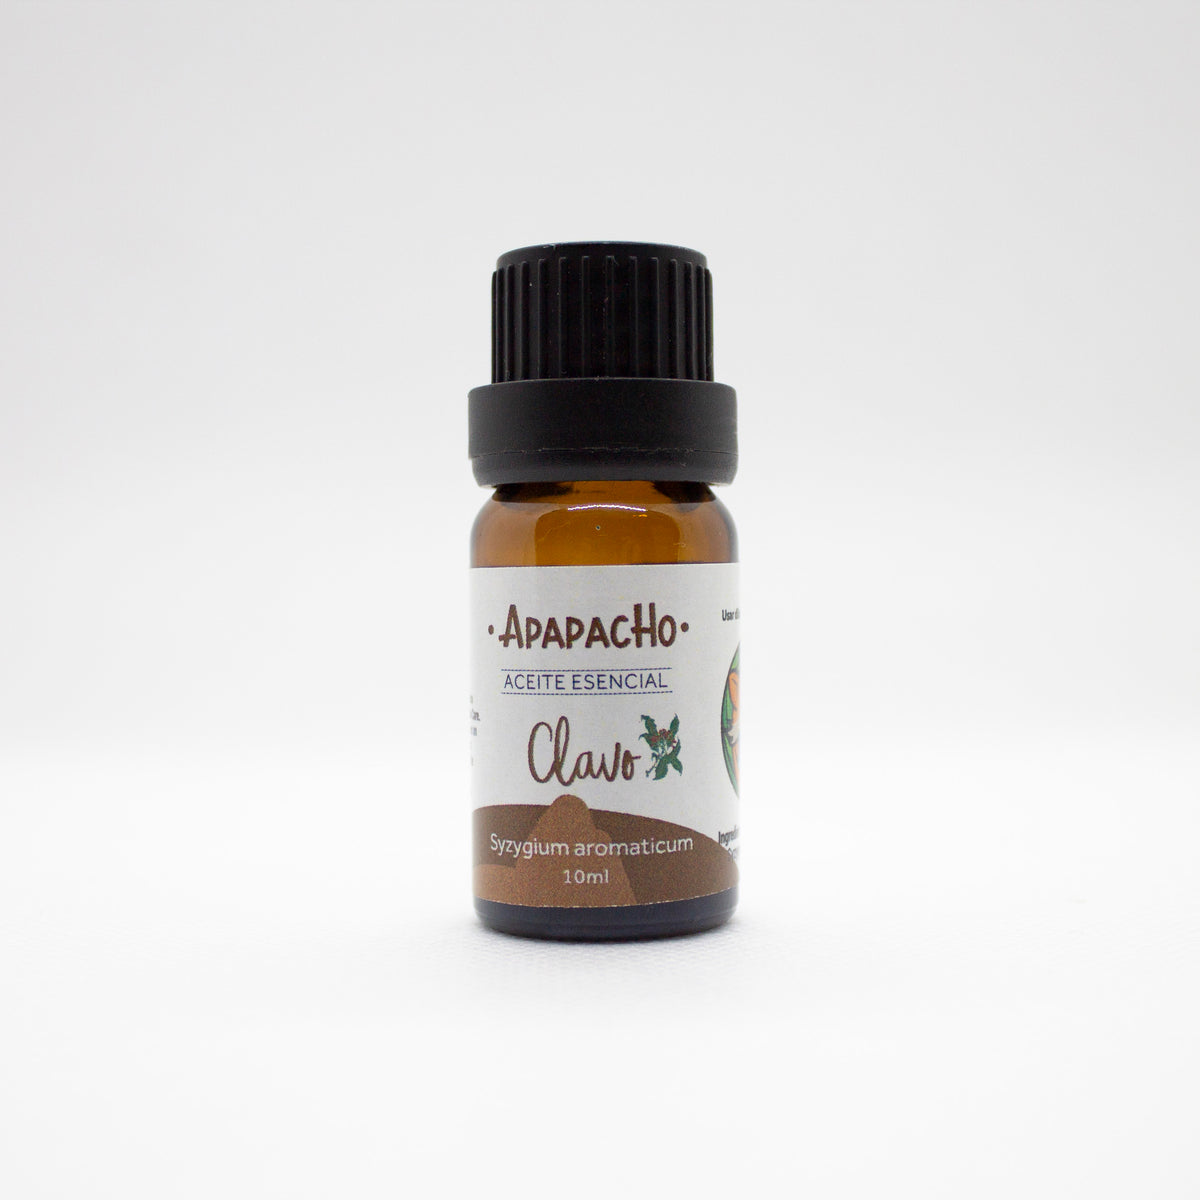 Aceite esencial de Menta – Apapacho Balsamos